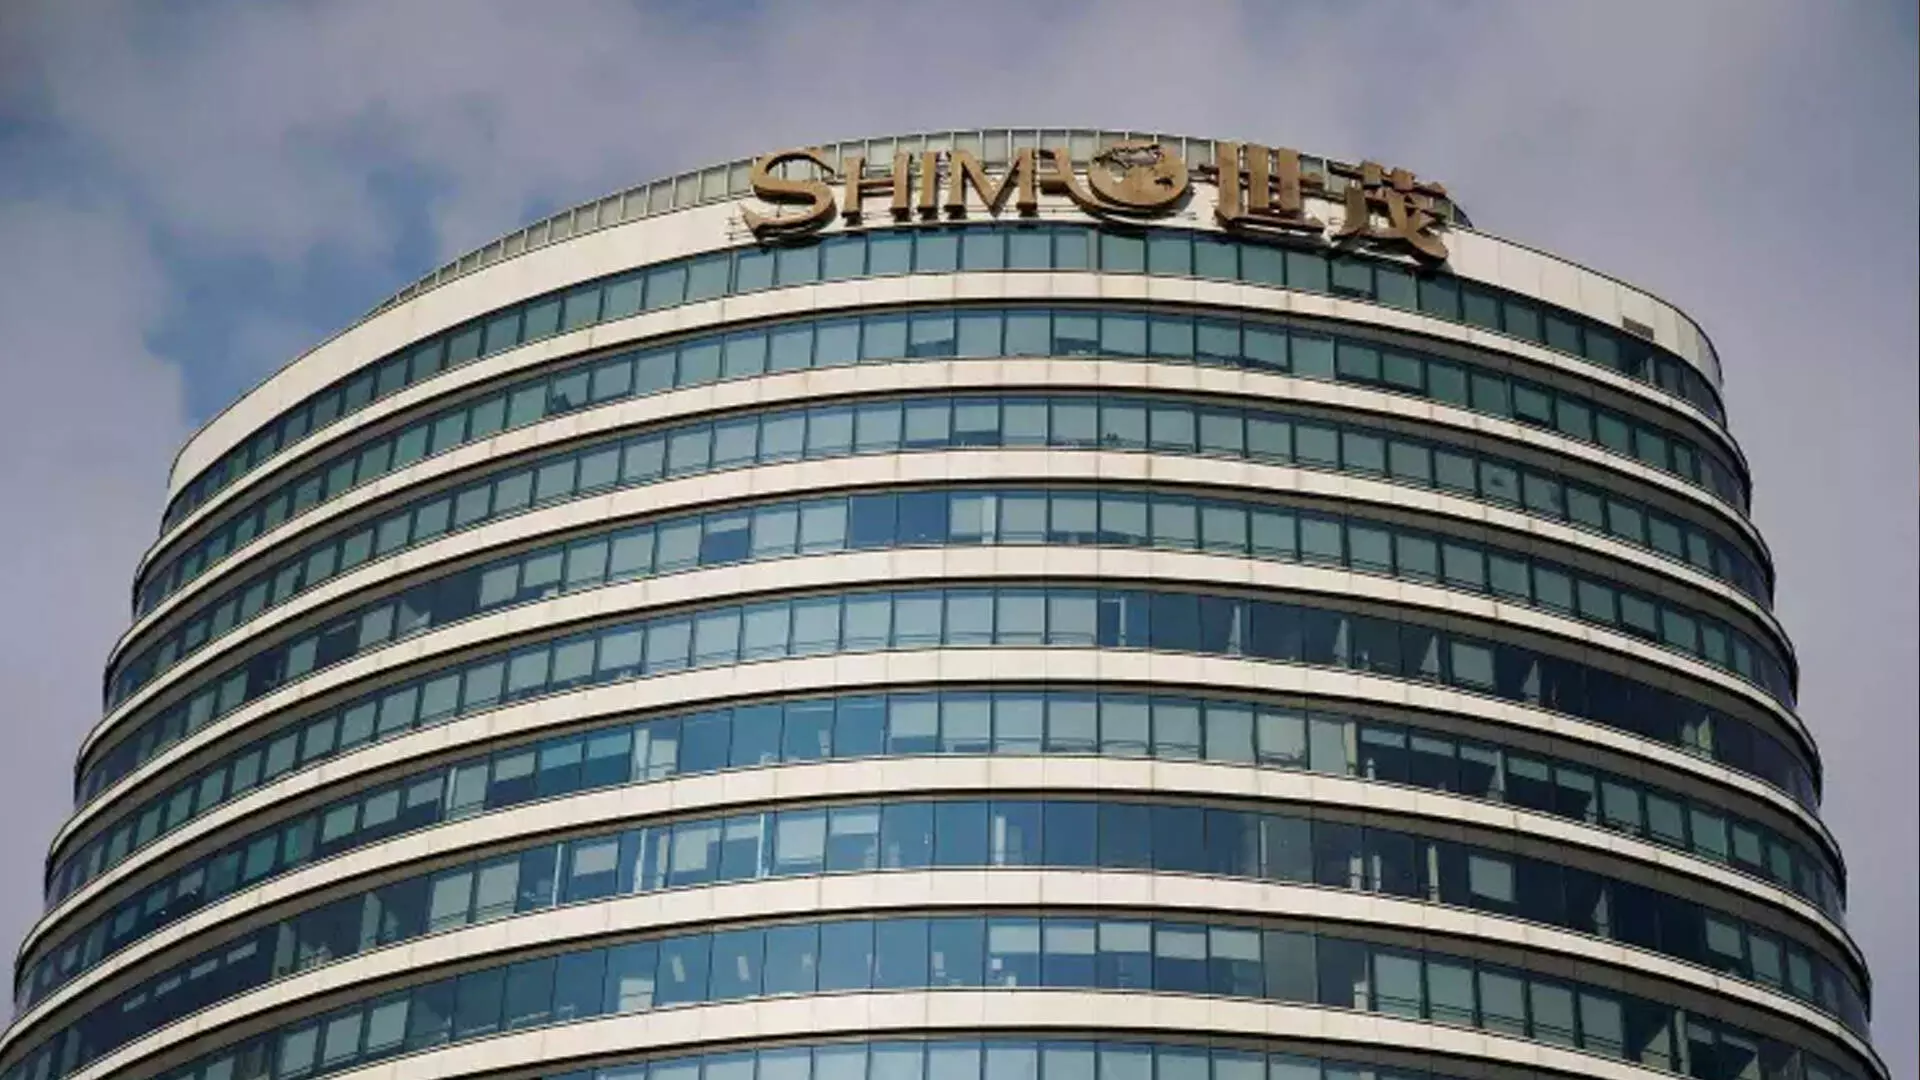 डॉयचे बैंक चीनी डेवलपर शिमाओ के खिलाफ परिसमापन मुकदमा दायर करेगा